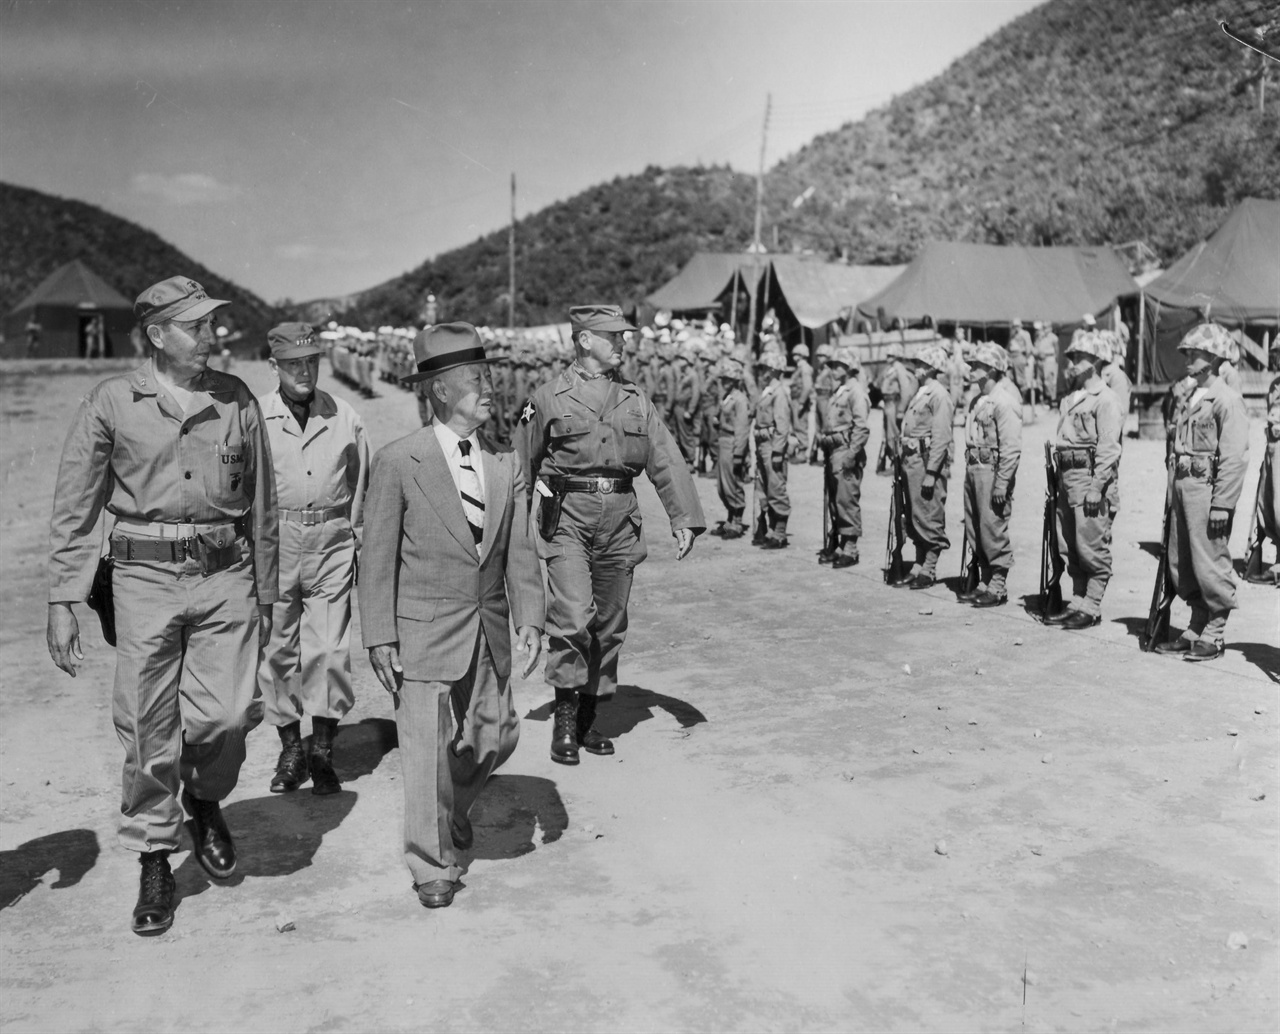 1952. 9. 18. 이승만대통령을 비롯한 유엔군 고위층이 해병부대를 시찰하고 있다(가운데 이승만대통령, 왼쪽 밴프리트 미 8군사령관)